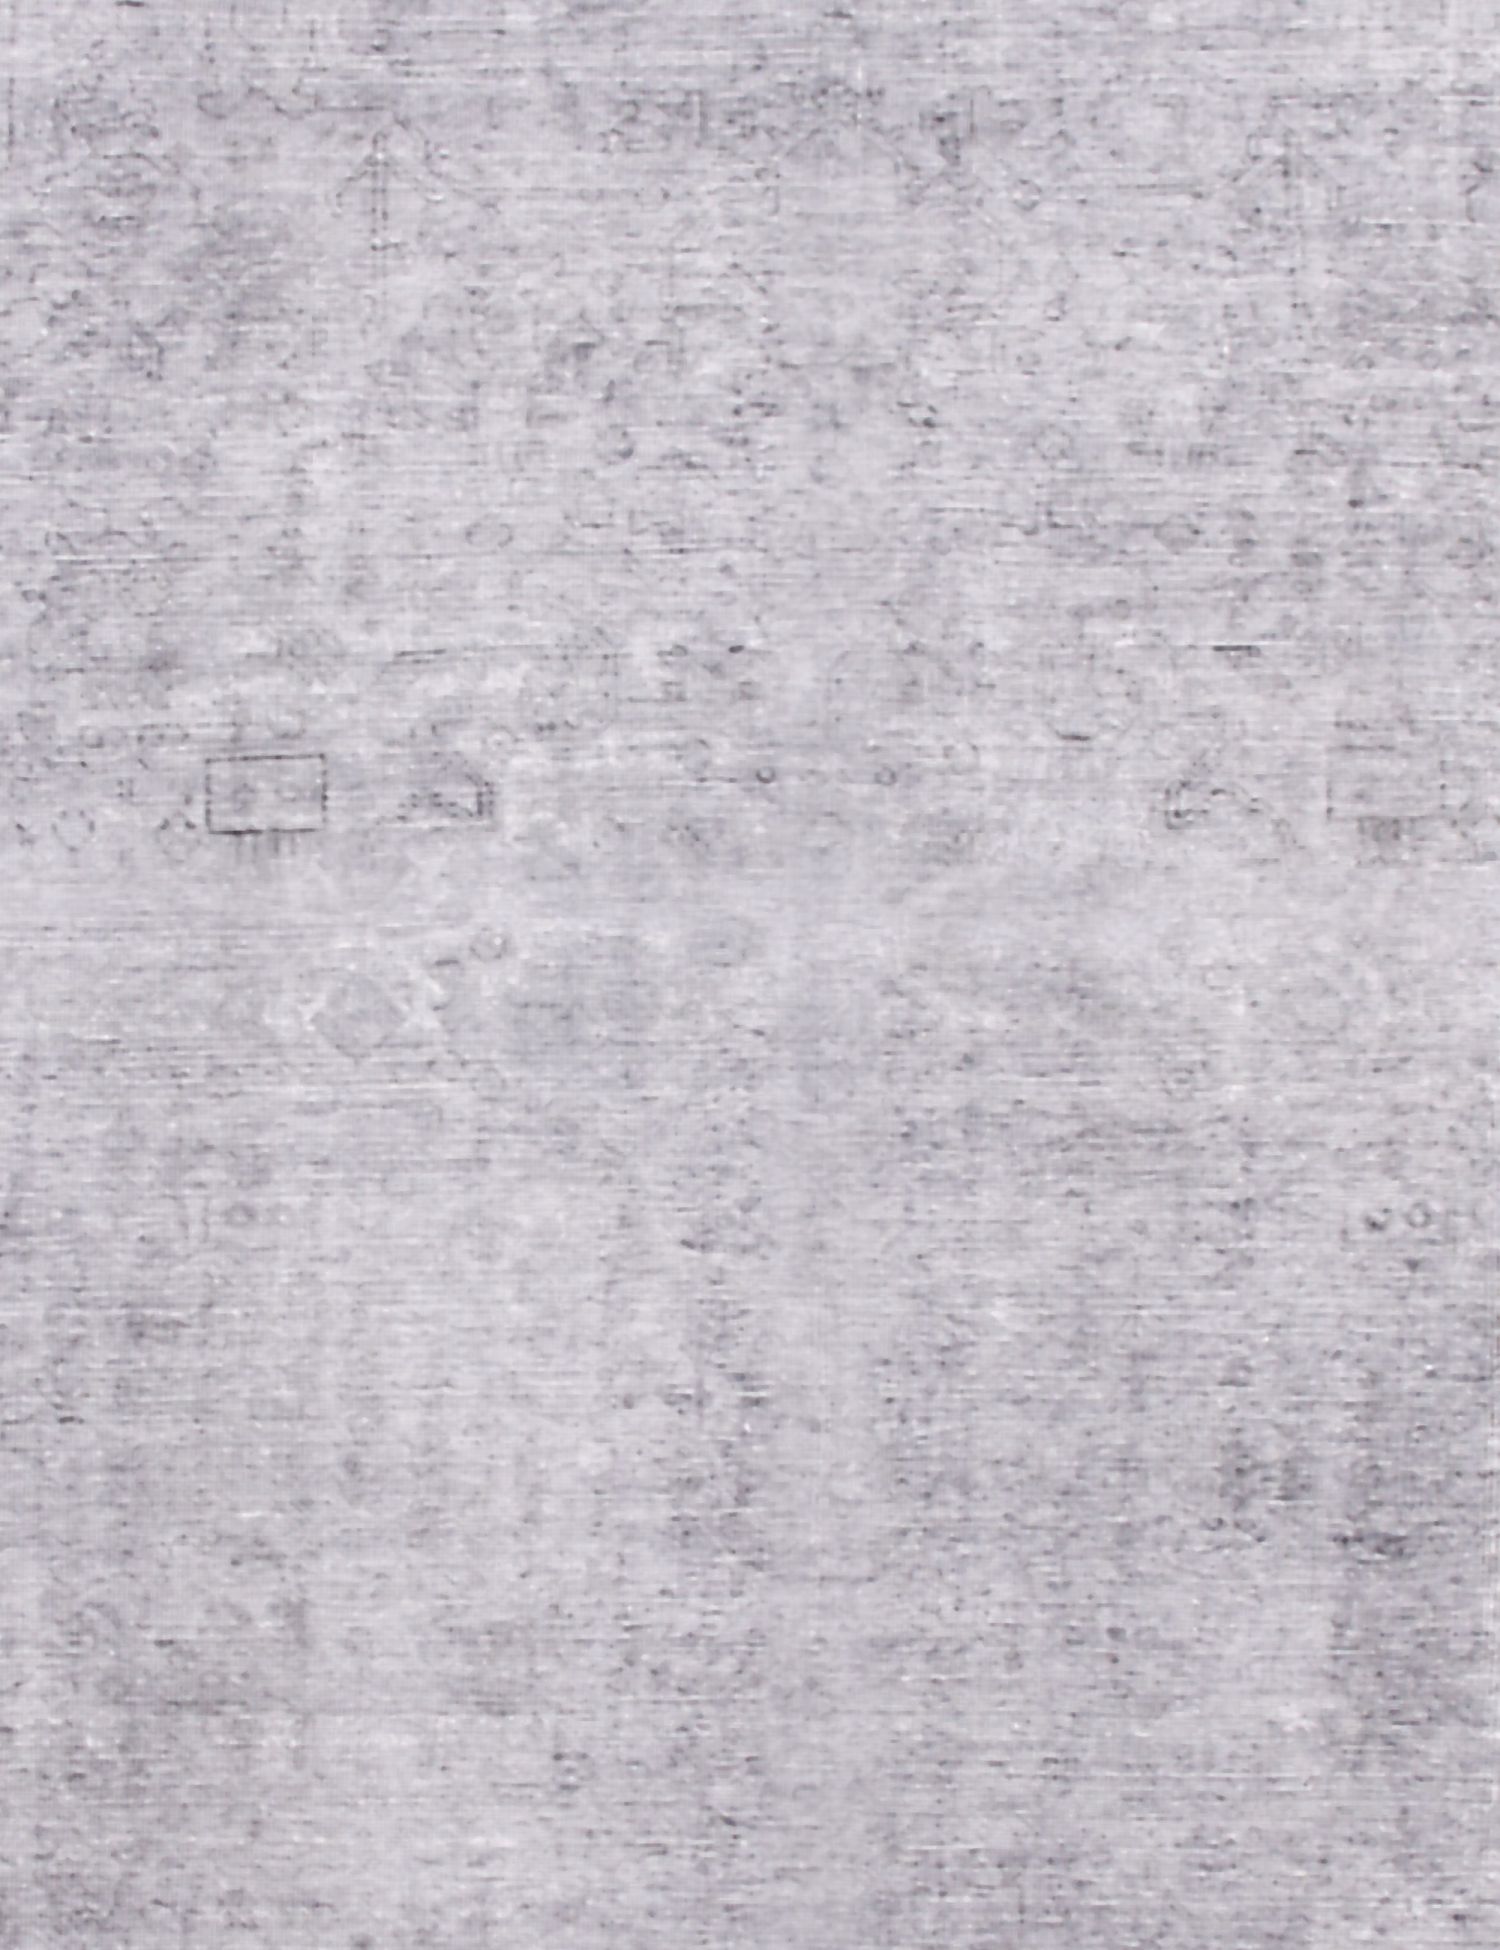 Persischer vintage teppich  grau <br/>285 x 184 cm